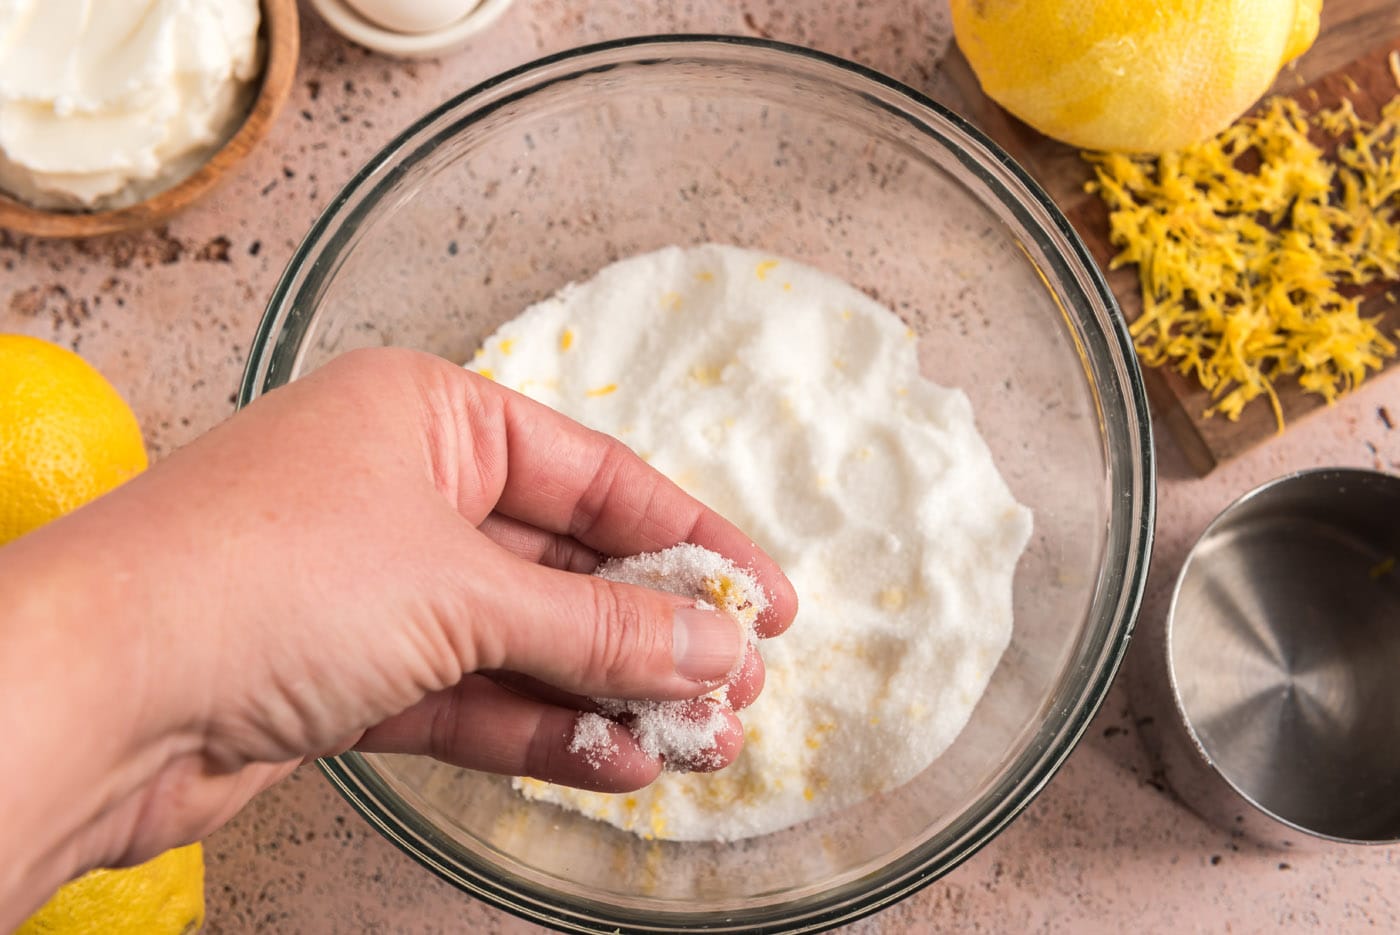 rubbing lemon zest together with sugar